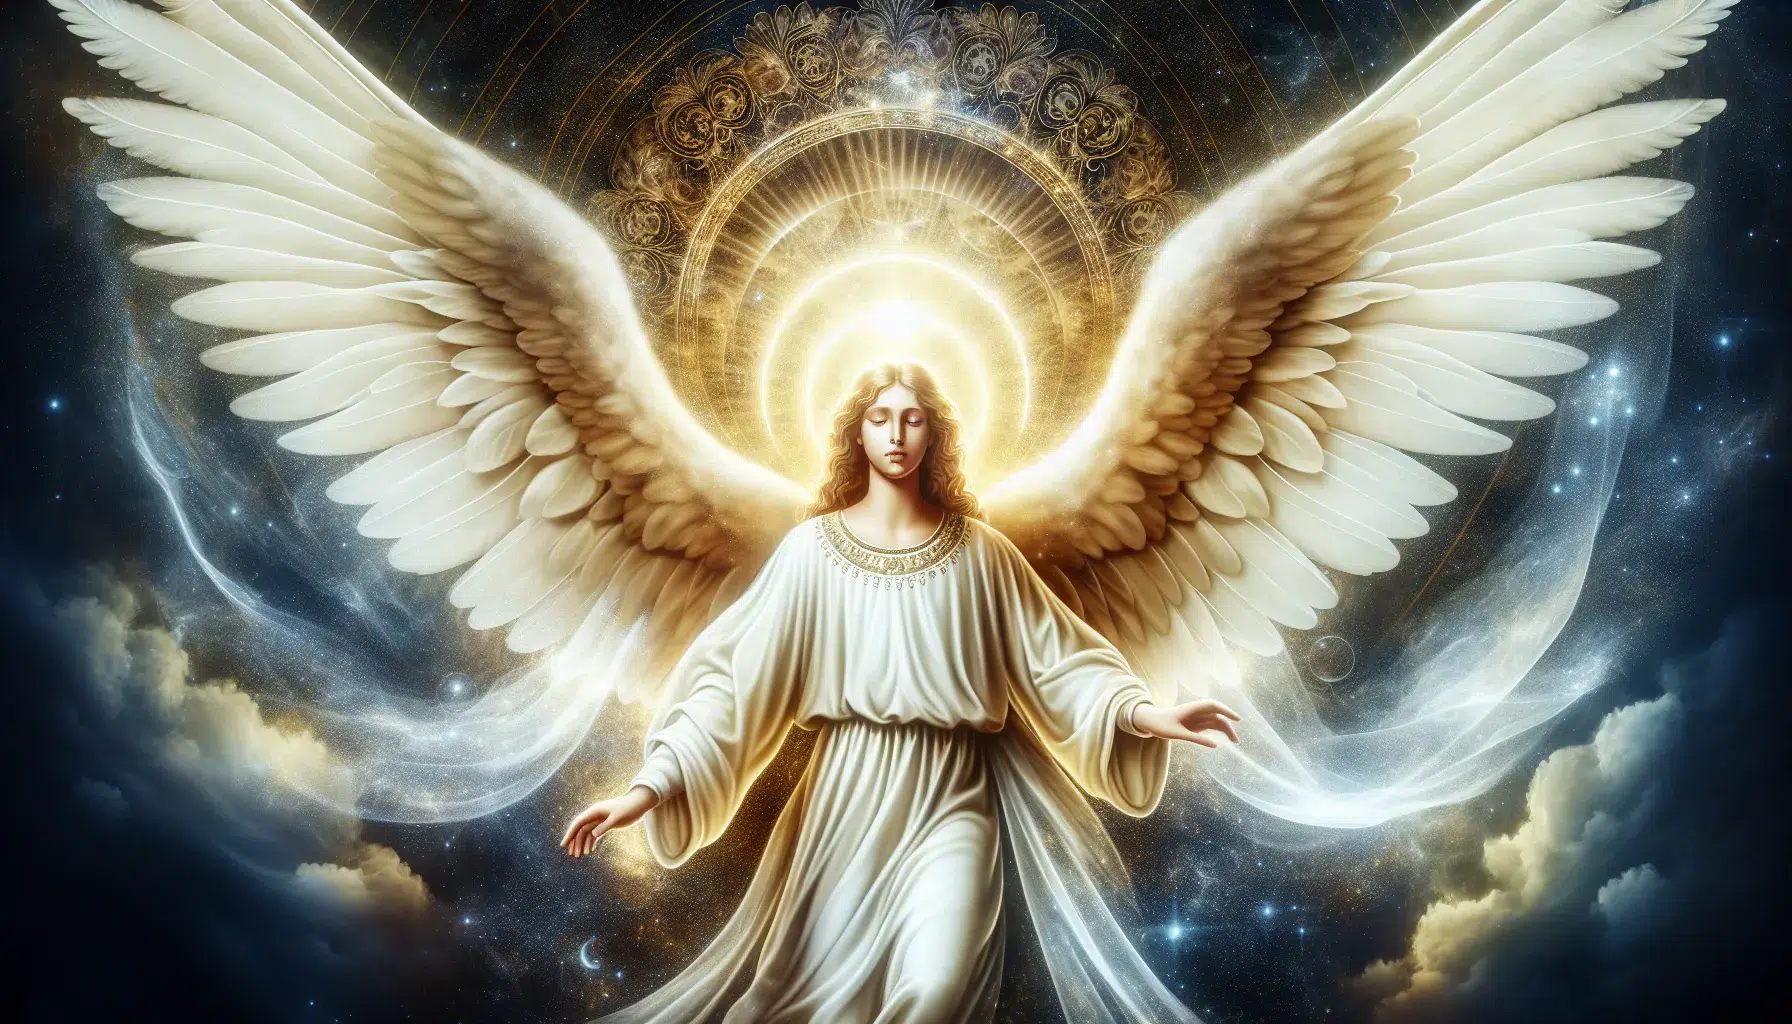 Imagen de un ángel celestial con alas blancas, simbolizando la esencia espiritual y divina de la Angelología.